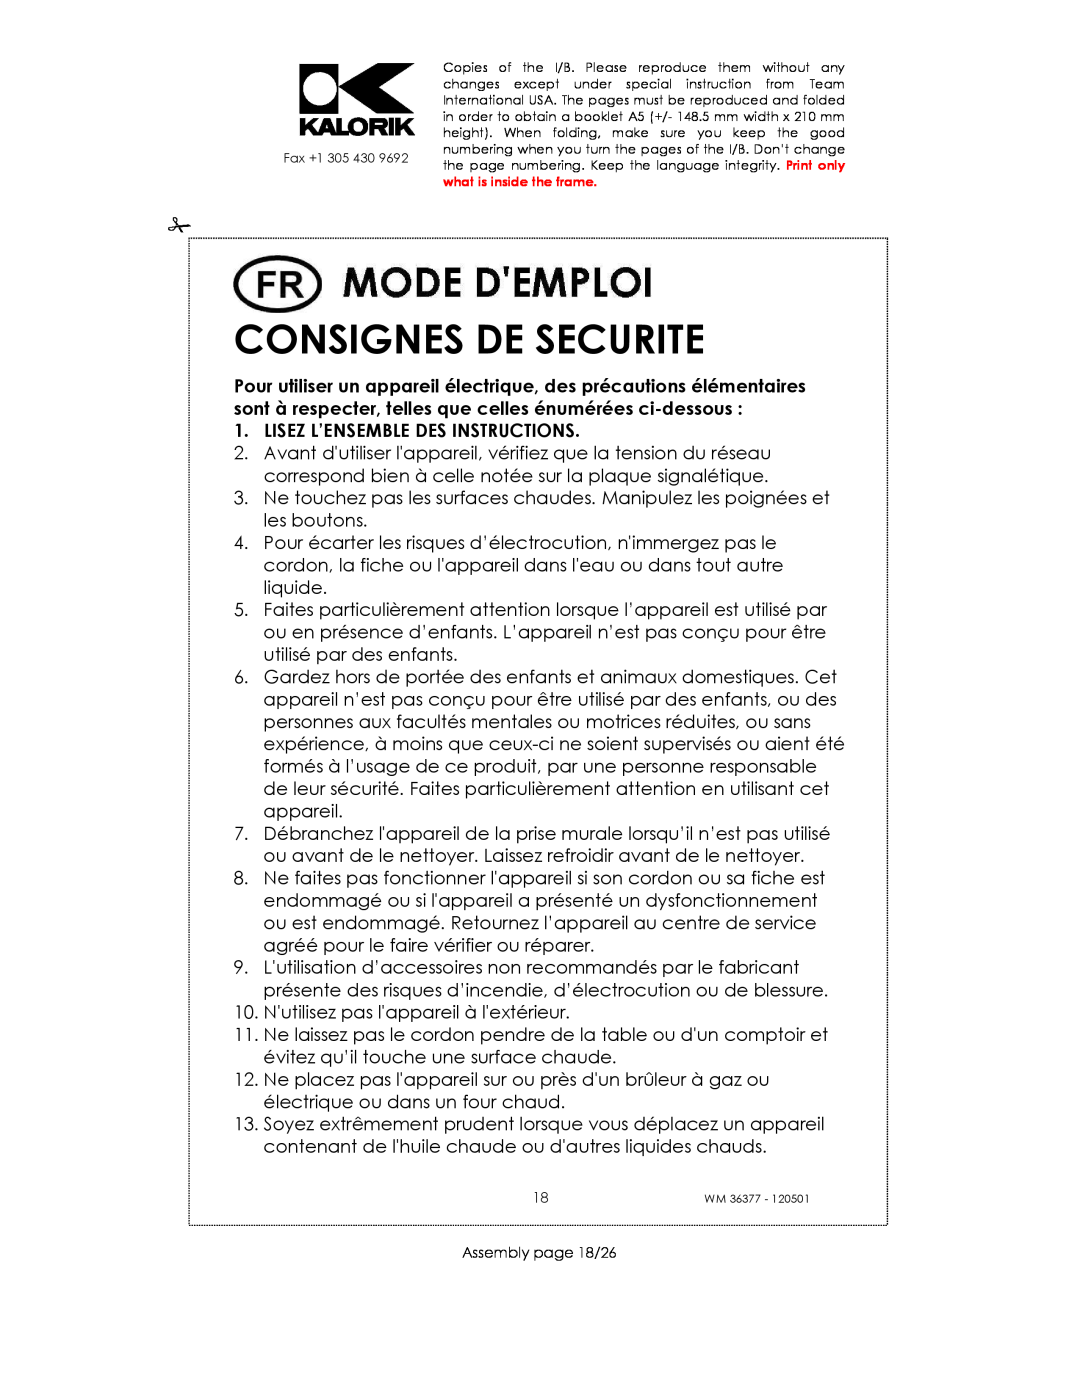 Kalorik WM 36377 manual Consignes De Securite, Lisez L’Ensemble Des Instructions 